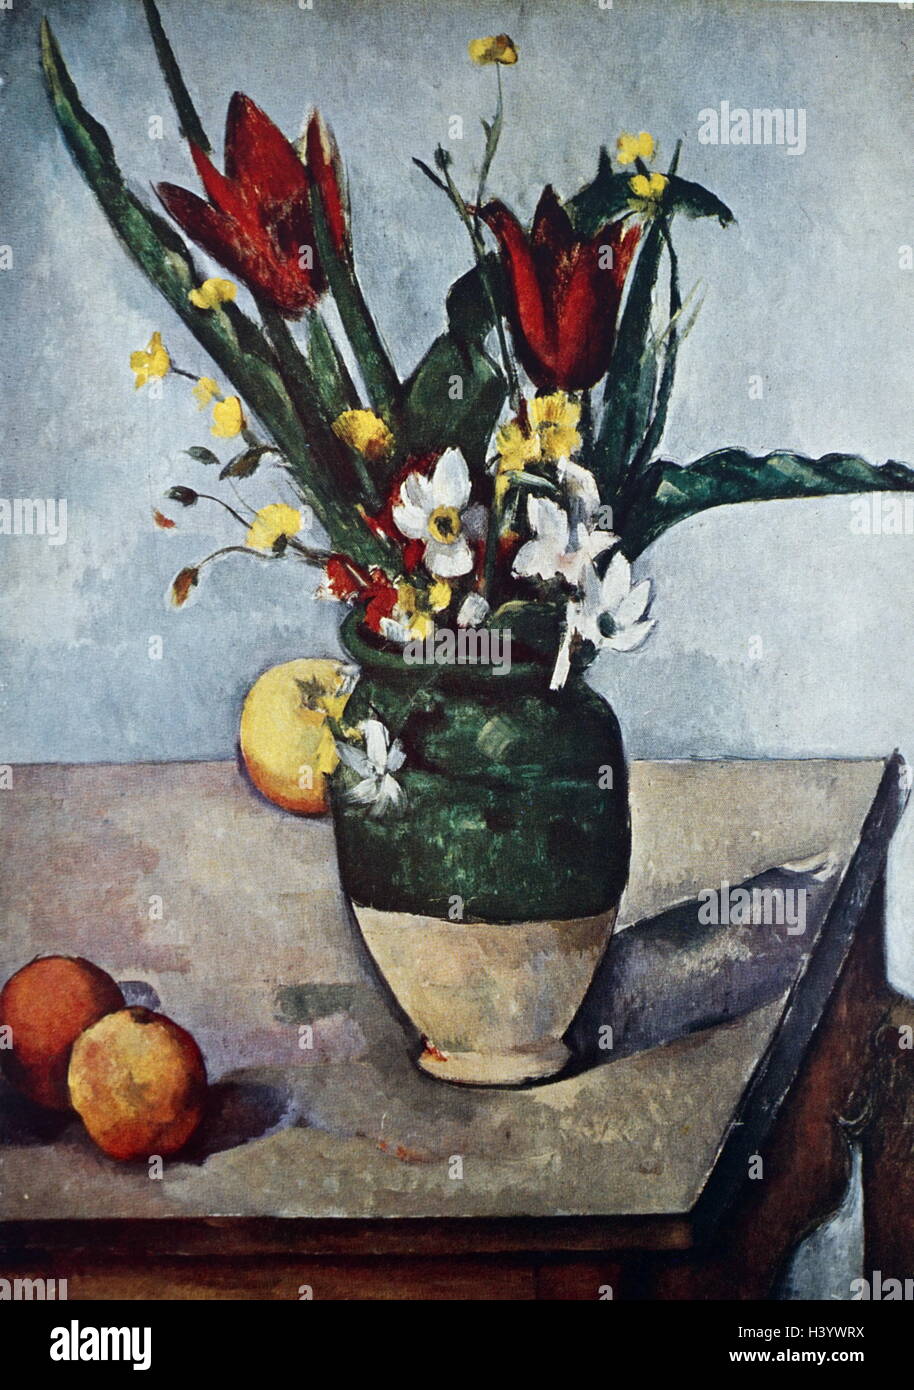 Gemälde mit dem Titel 'Tulpen mit Äpfeln" von Paul Cézanne (1839-1906), ein französischer Künstler und post-impressionistischen Maler. Vom 19. Jahrhundert Stockfoto